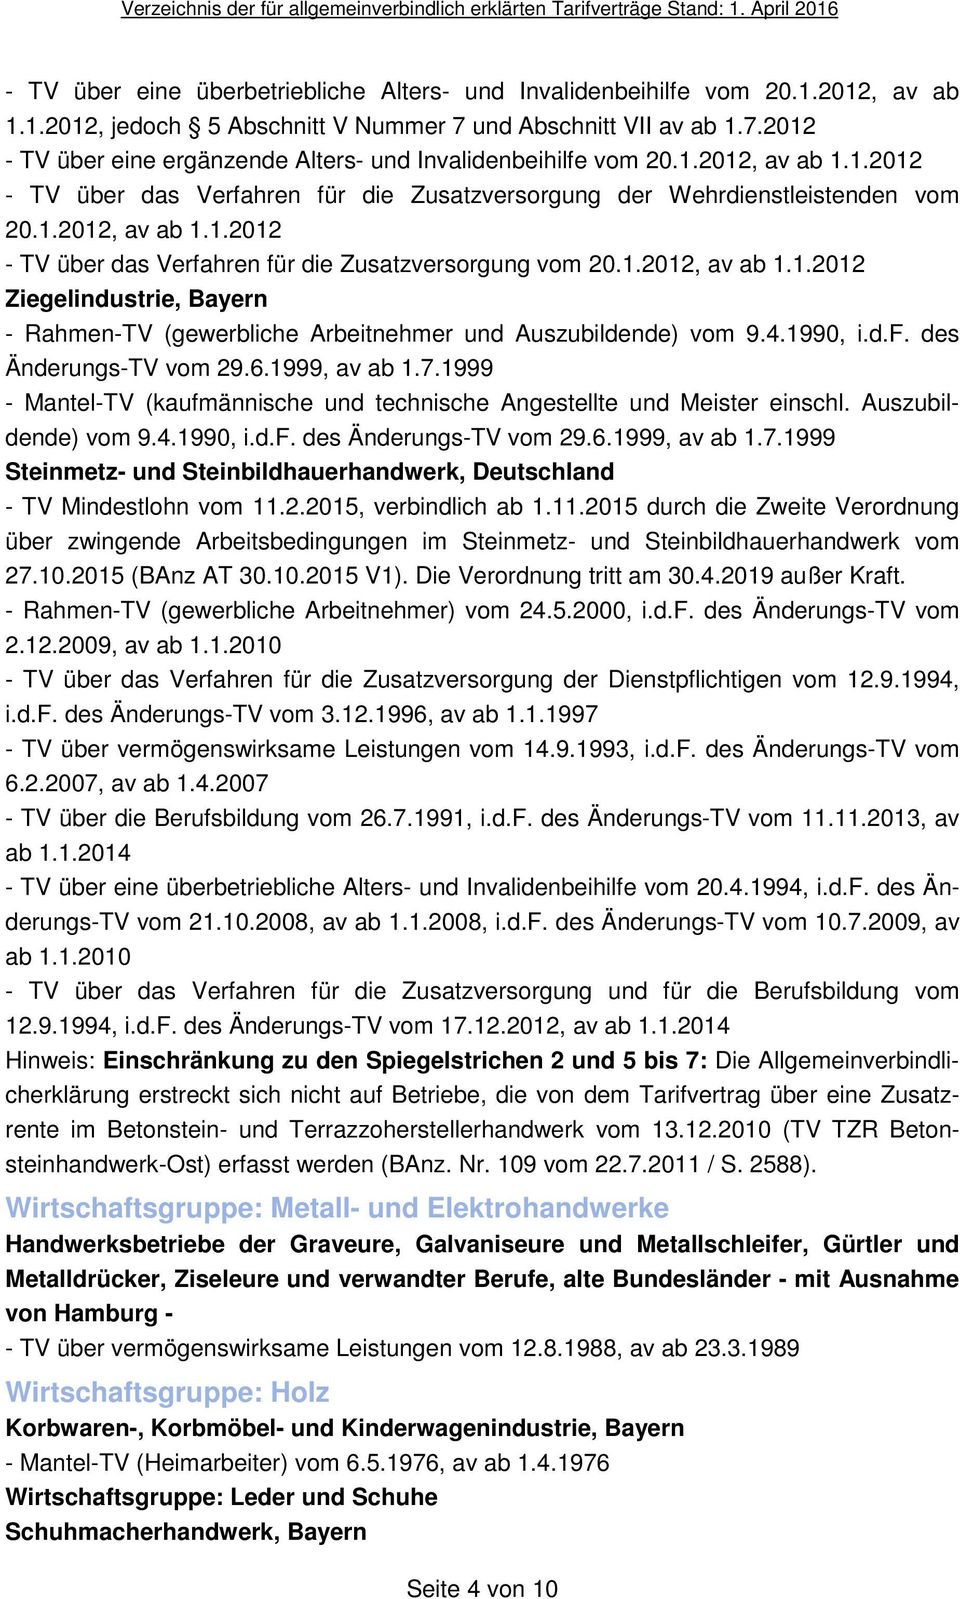 4.1990, i.d.f. des Änderungs-TV vom 29.6.1999, av ab 1.7.1999 - Mantel-TV (kaufmännische und technische Angestellte und Meister einschl. Auszubildende) vom 9.4.1990, i.d.f. des Änderungs-TV vom 29.6.1999, av ab 1.7.1999 Steinmetz- und Steinbildhauerhandwerk, Deutschland - TV Mindestlohn vom 11.